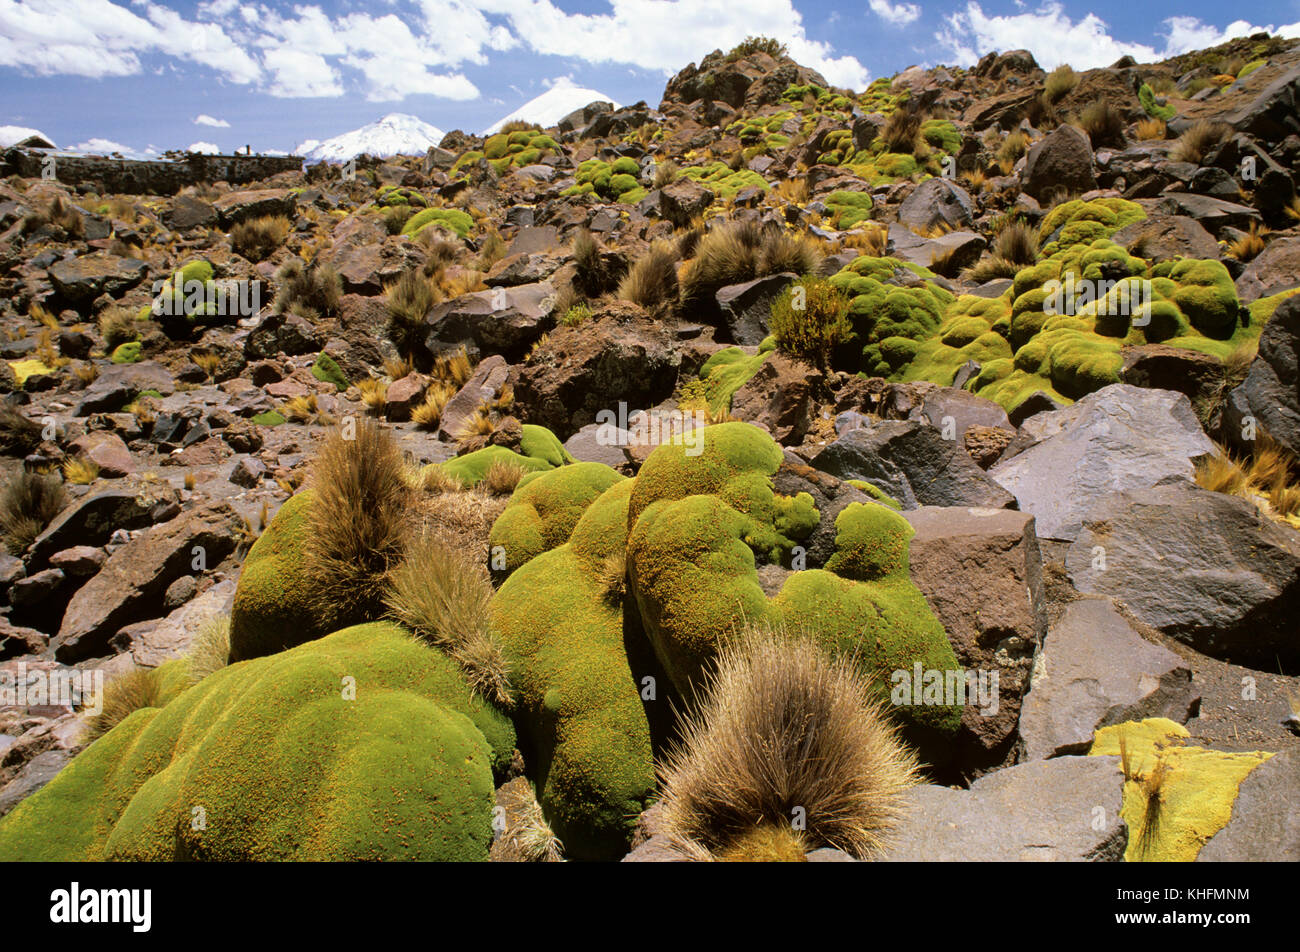 Llareta (Azorella compacta), qui pousse à bénéficier de faibles radiations du sol noir en dessous. Le parc national de Lauca, Arica-Parinacota, Chili Banque D'Images